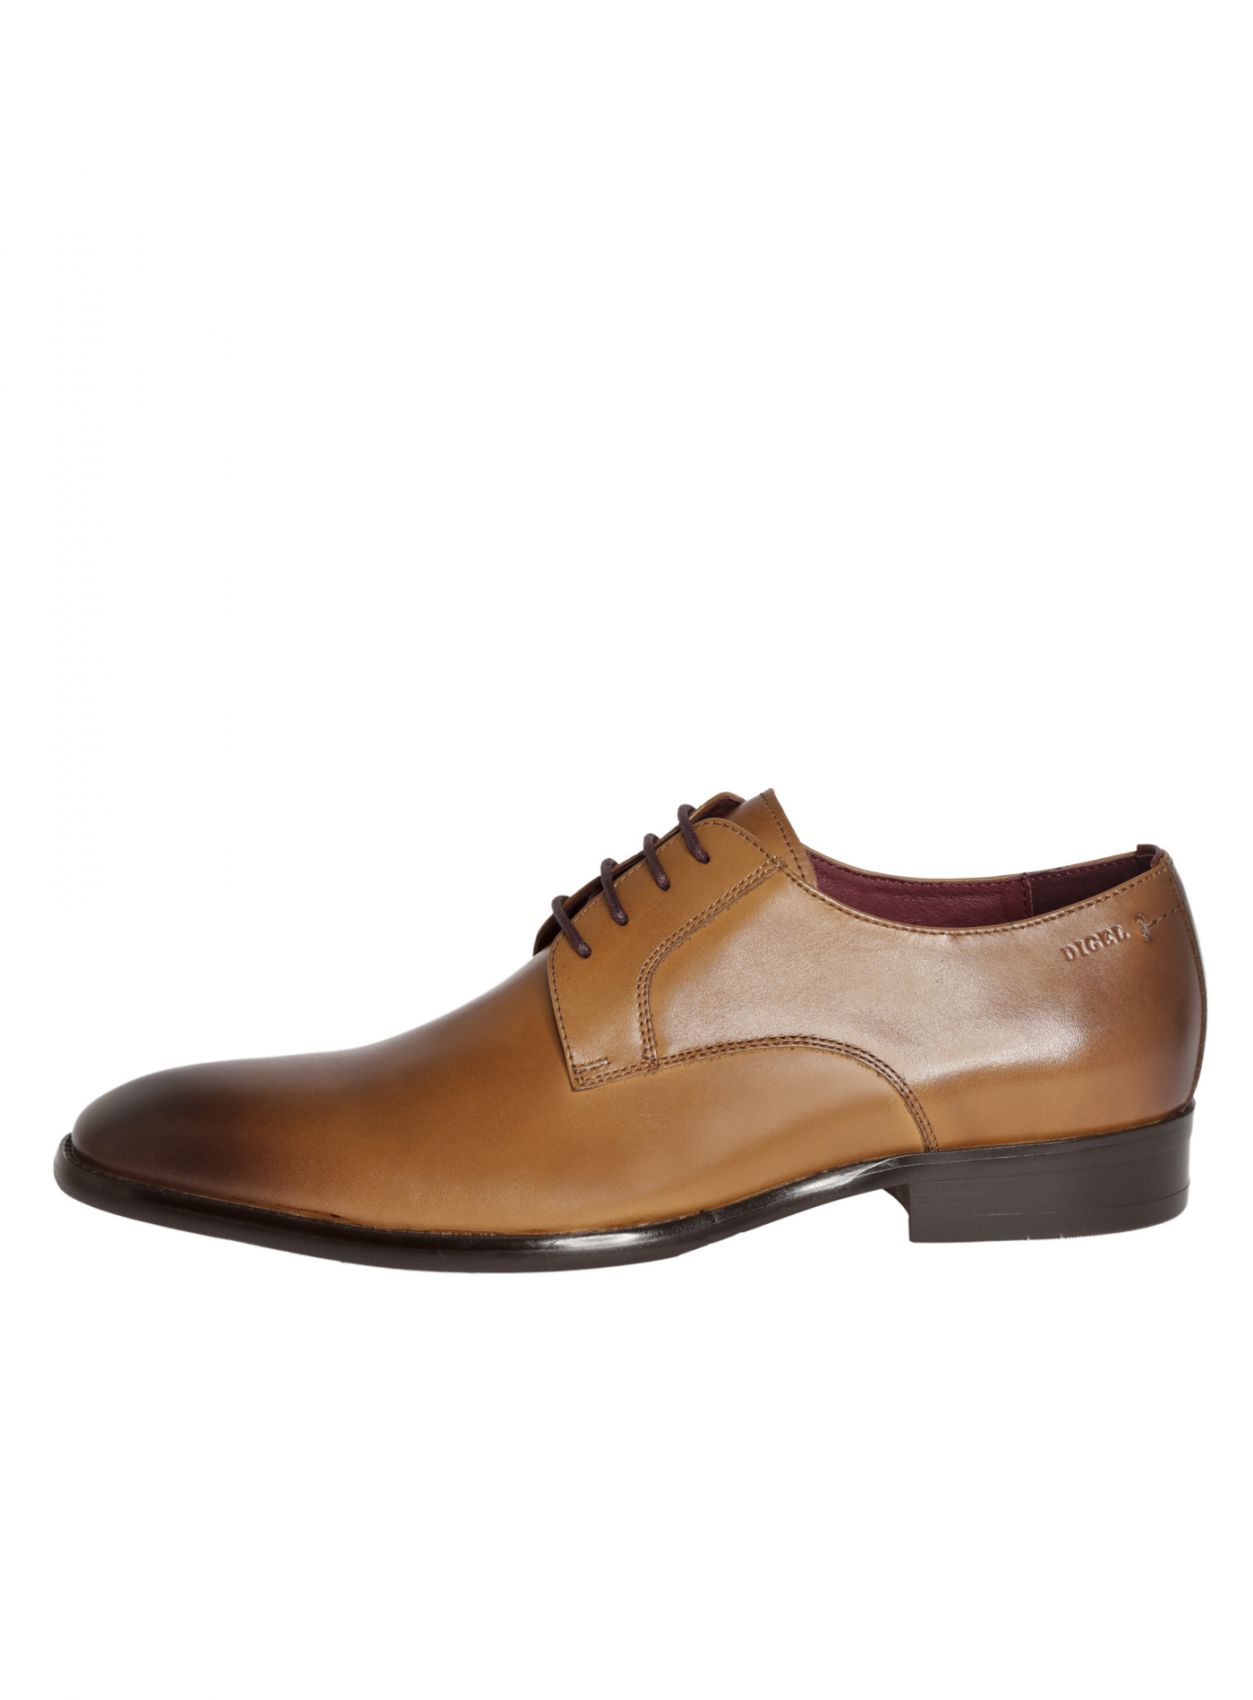 Men's elegant Digel color cognac shoe in real leather